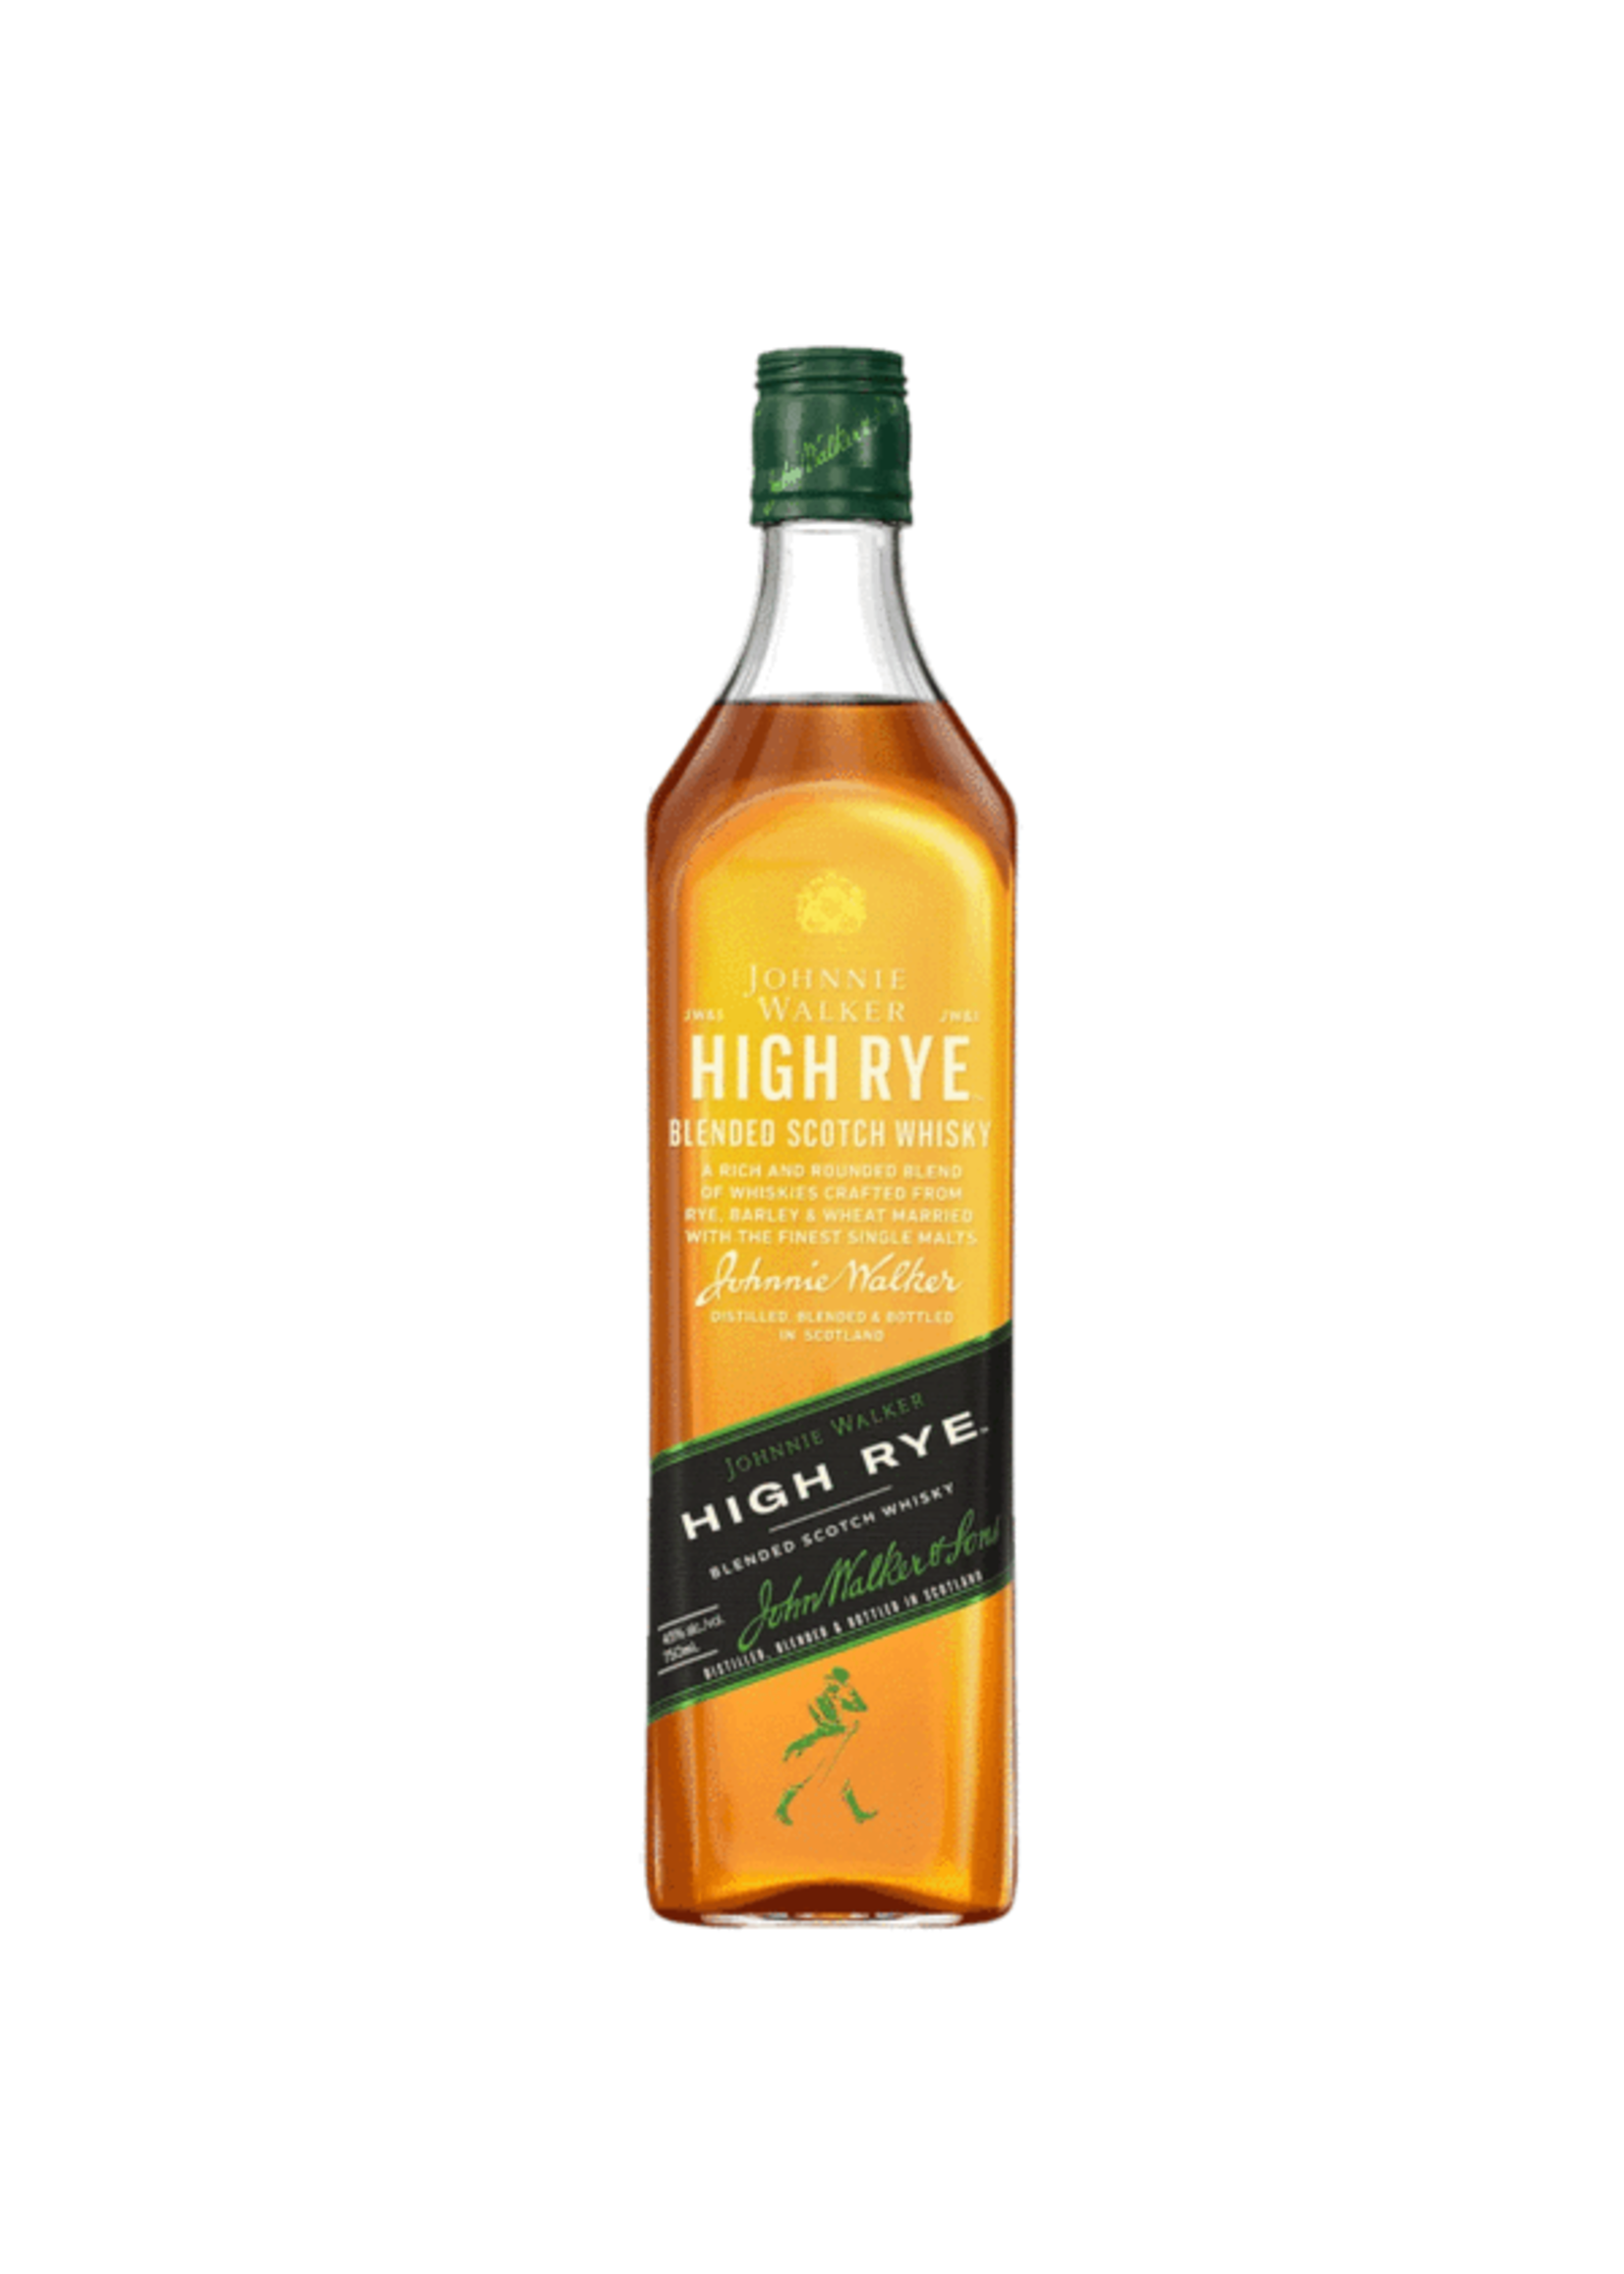 Johnnie Walker Johnnie Walker / High Rye Blended Scotch Whisky / 750mL